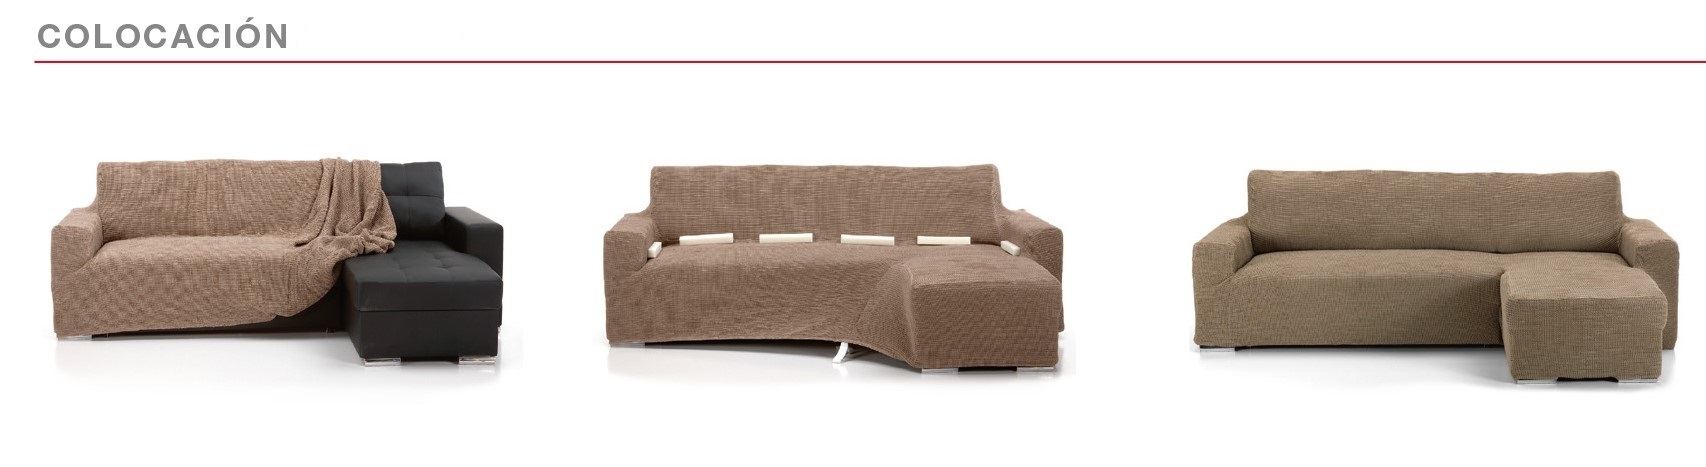 Sistema de colocación de fundas para sofá chaiselongue